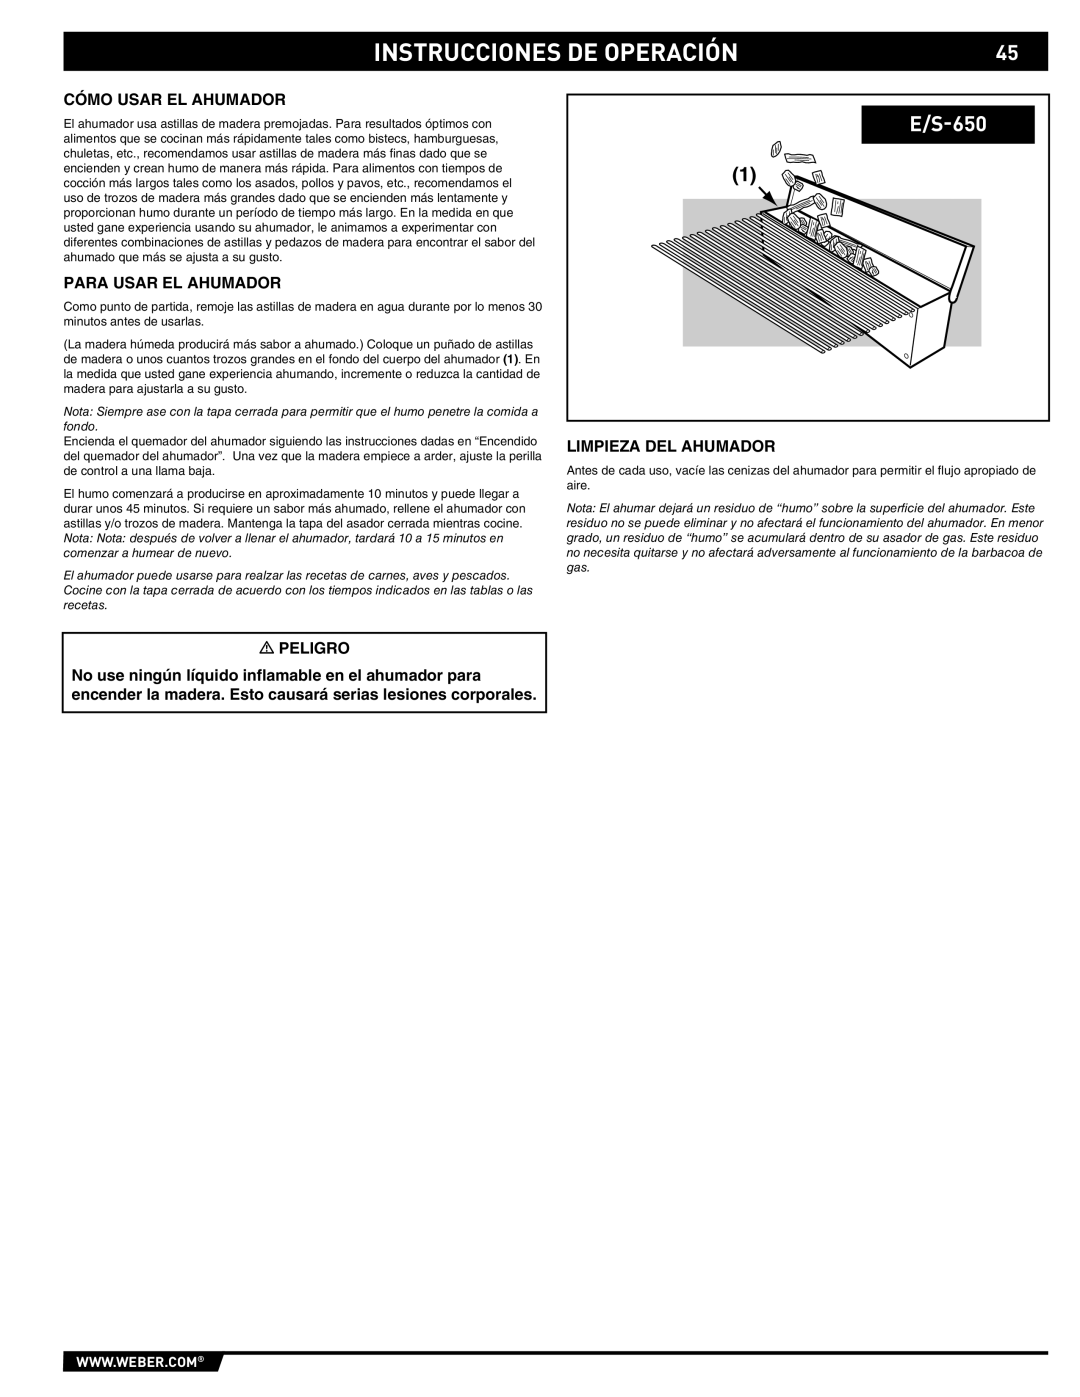 Summit E/S-620/650 manual Cómo Usar EL Ahumador, Para Usar EL Ahumador, Limpieza DEL Ahumador 